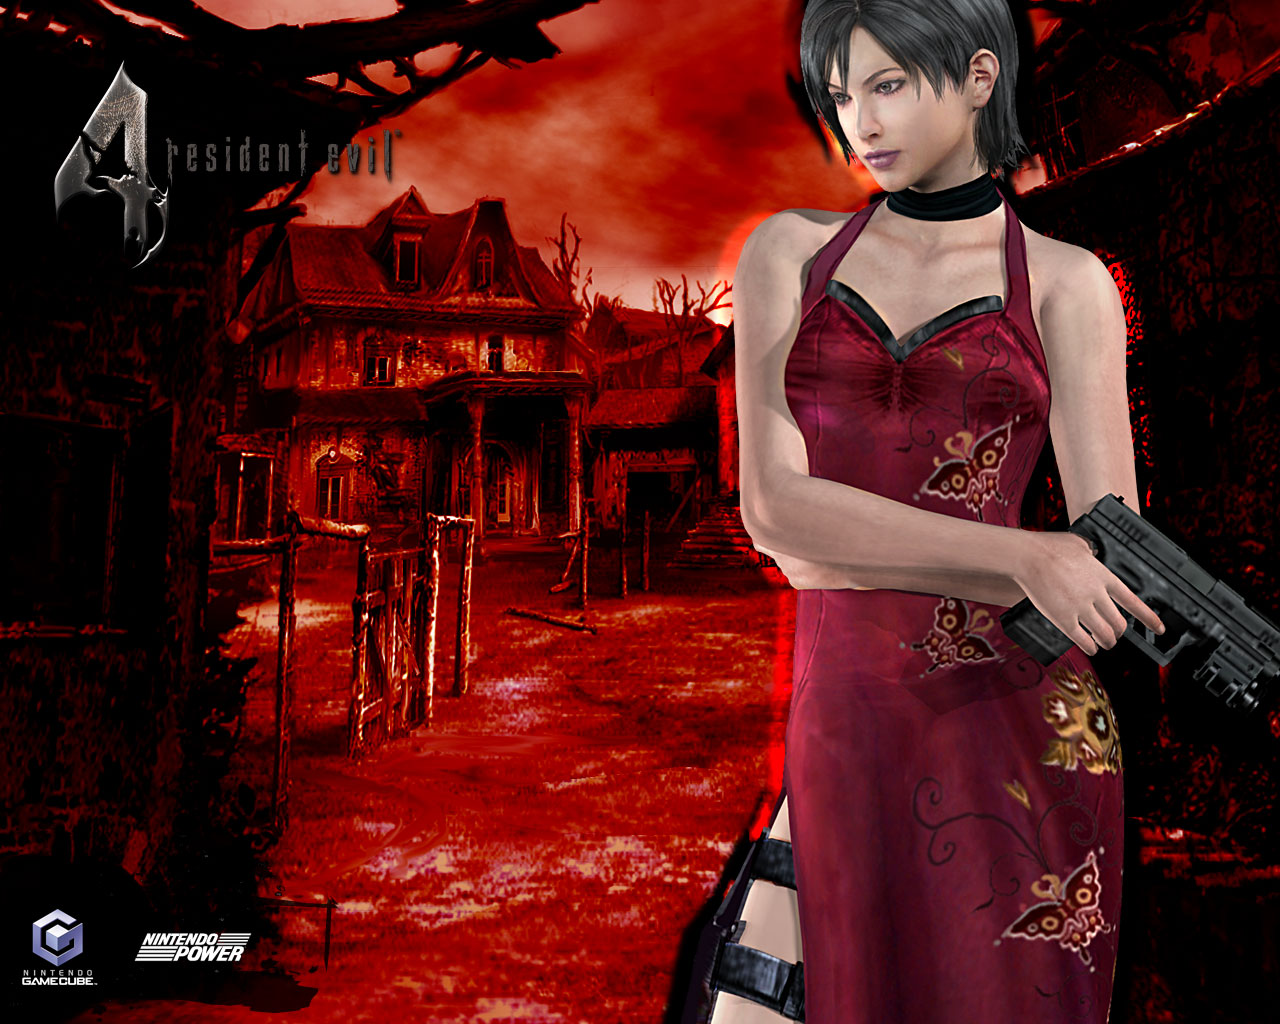 Resident_Evil_IV_02_1280x1024.jpg